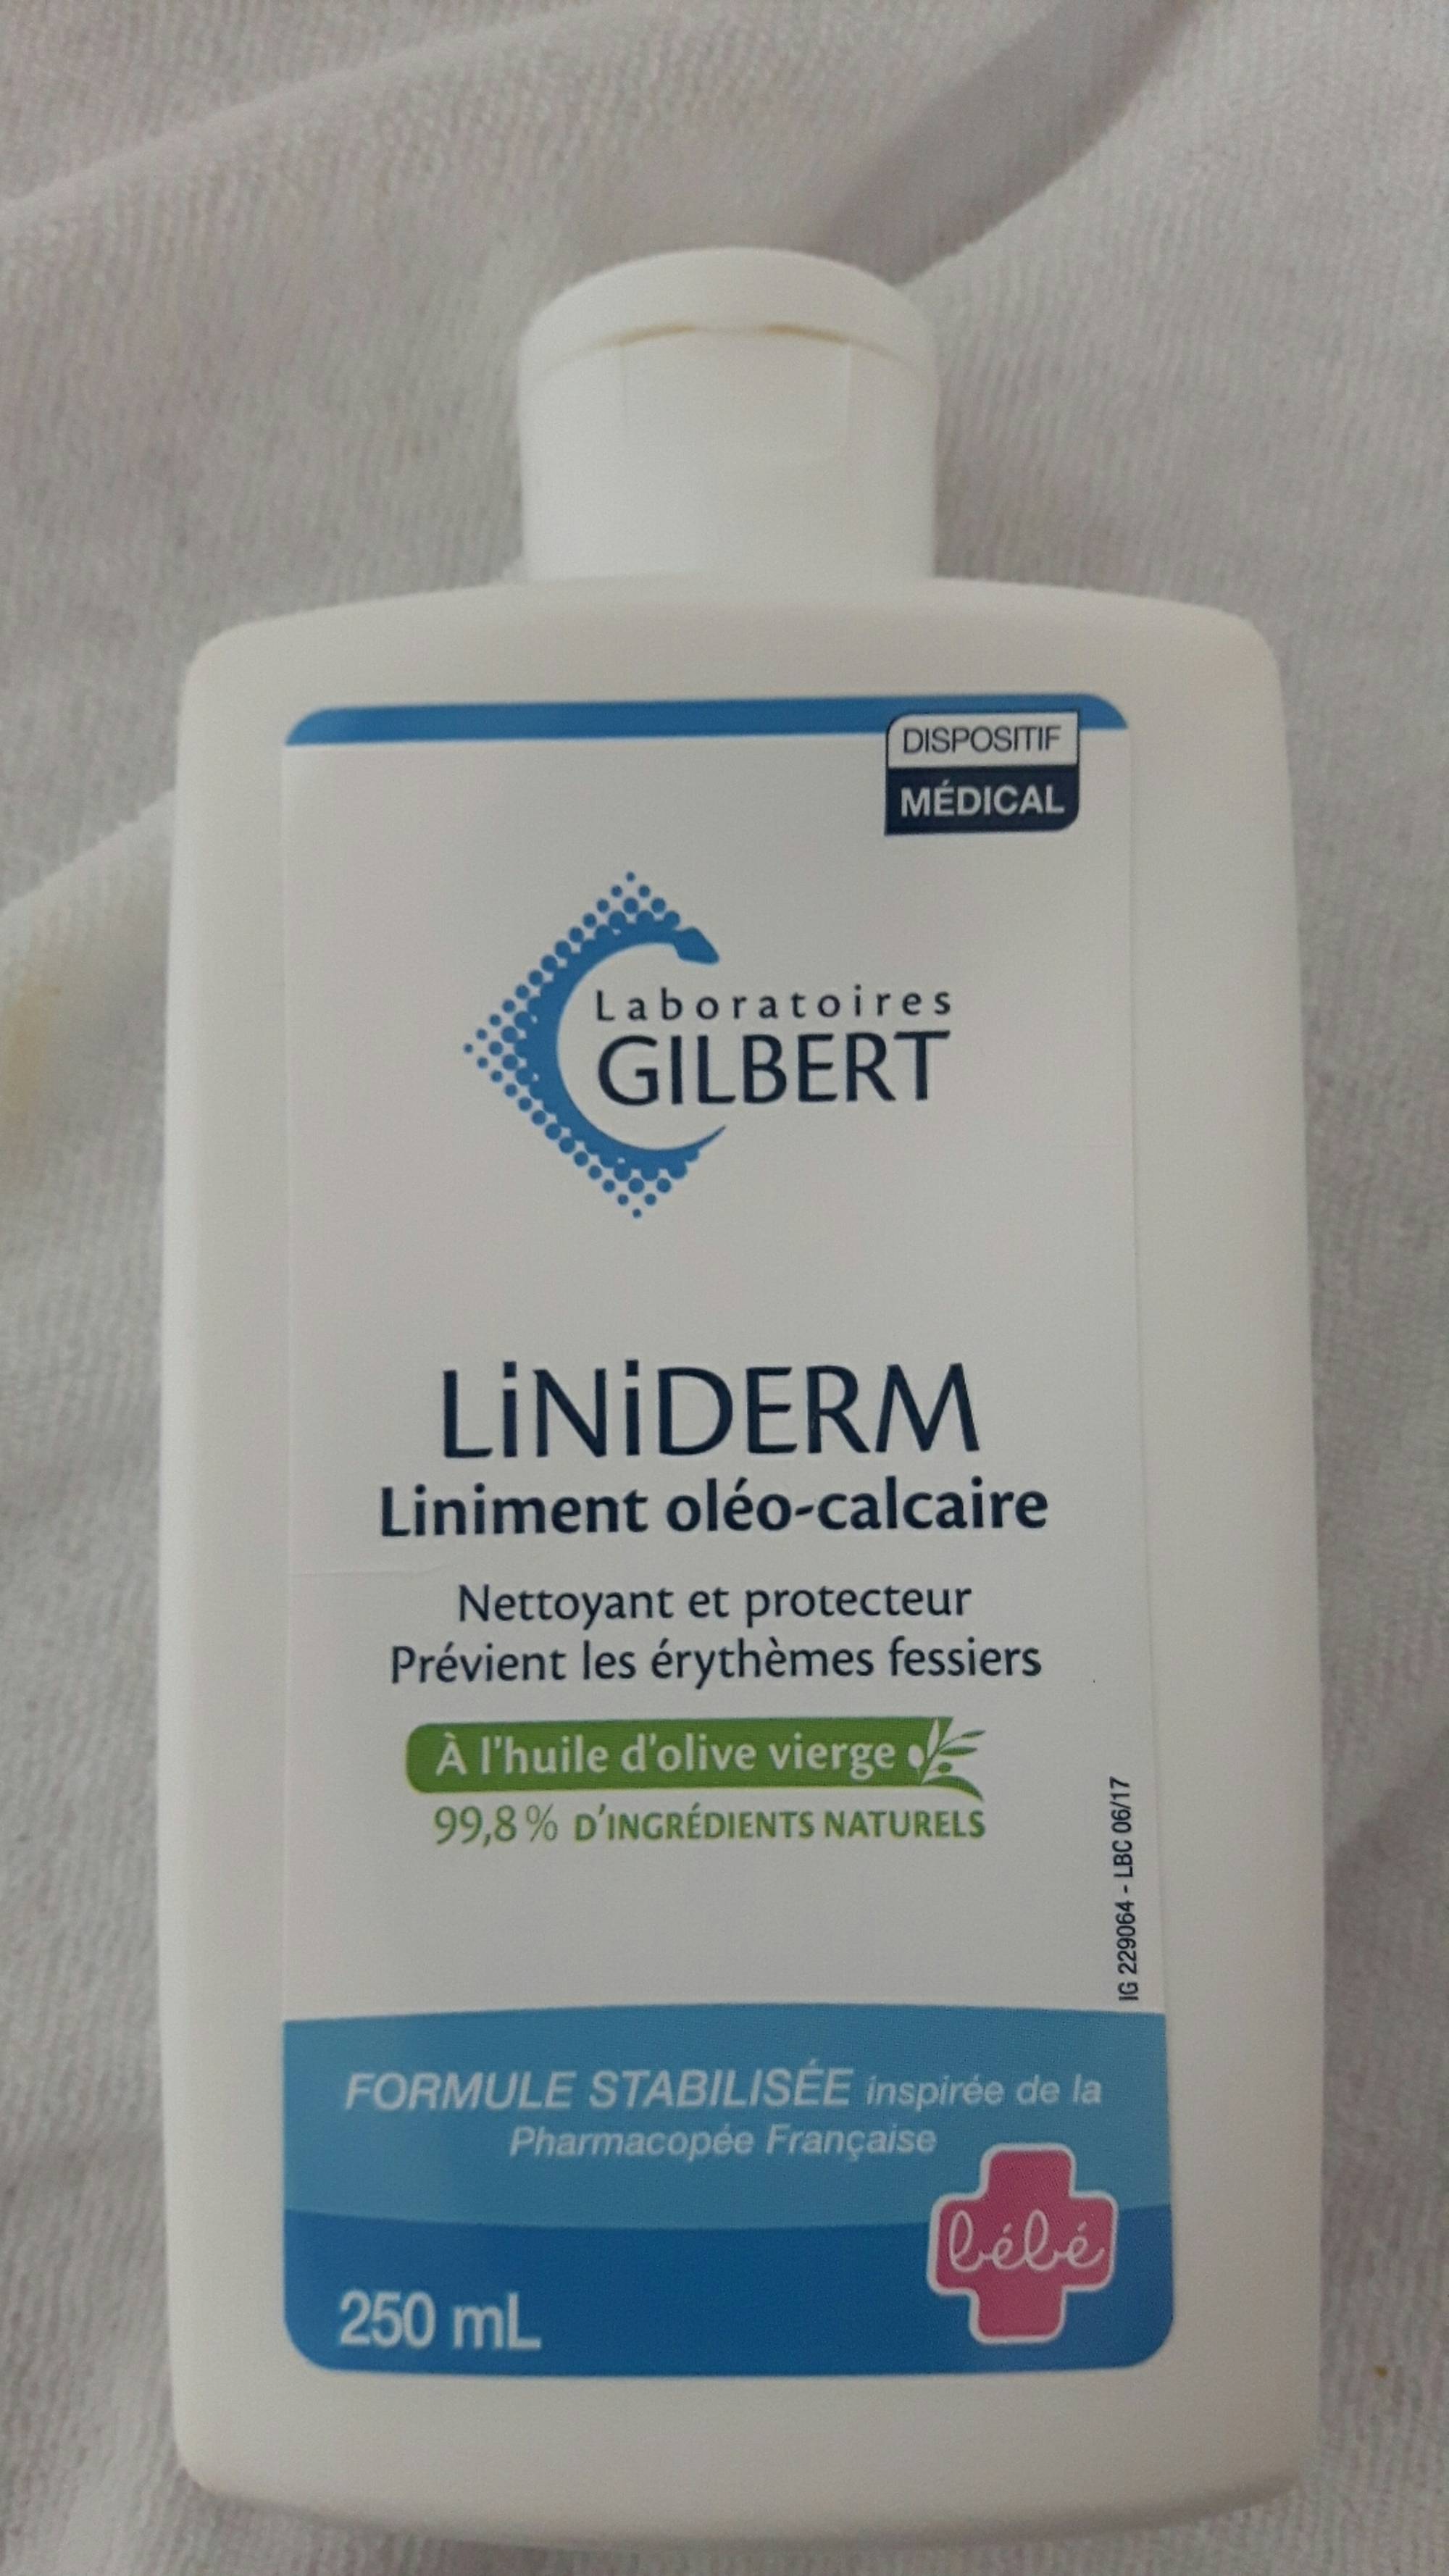 LABORATOIRES GILBERT - Liniderm - Nettoyant et protecteur